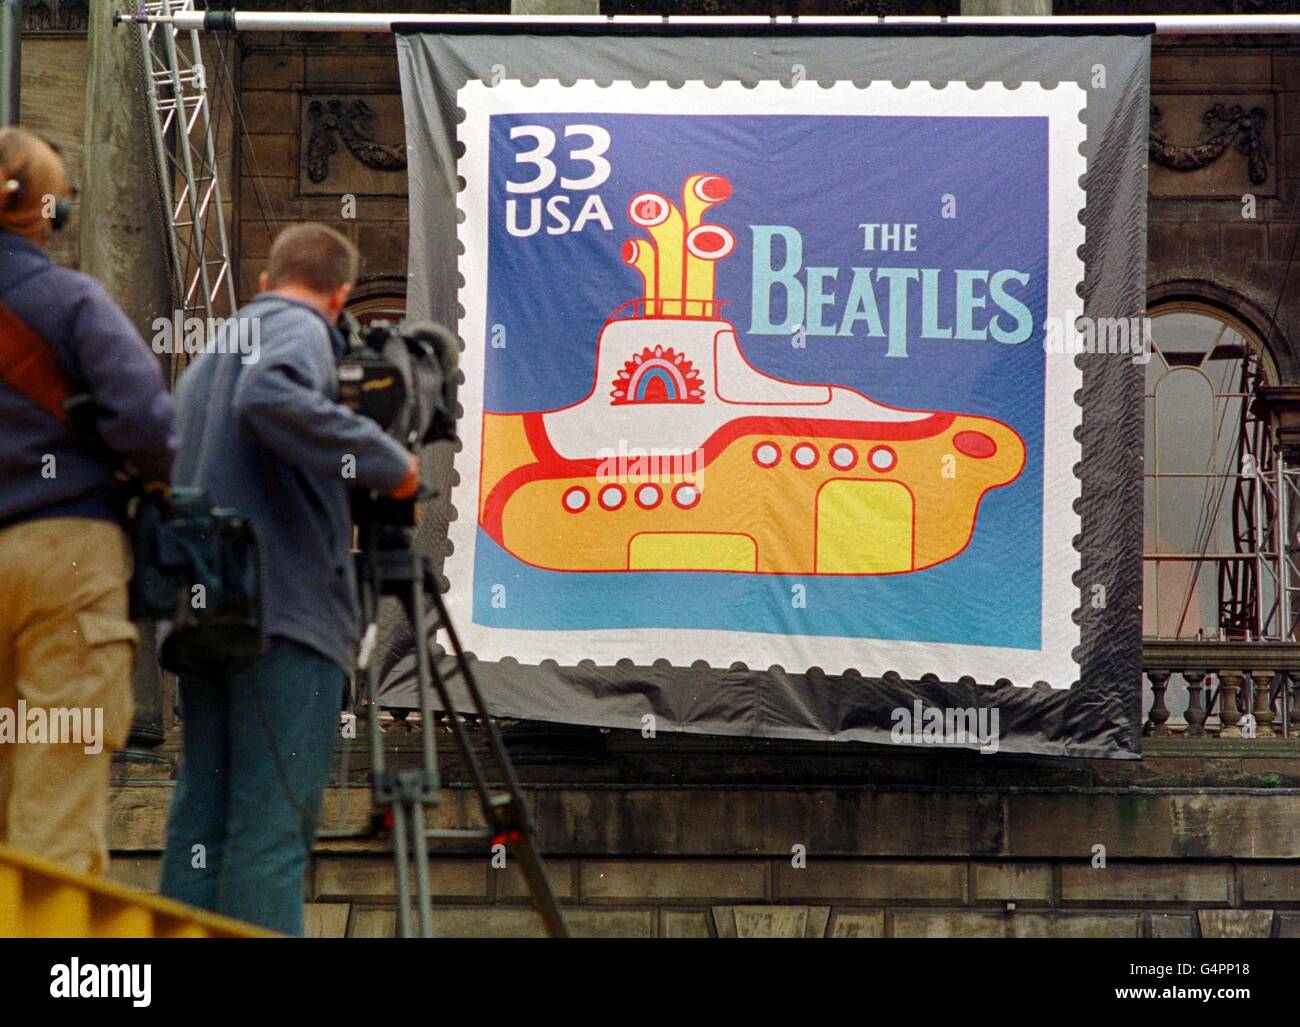 Liverpool/Beatles Stock Photo: 106221060 - Alamy